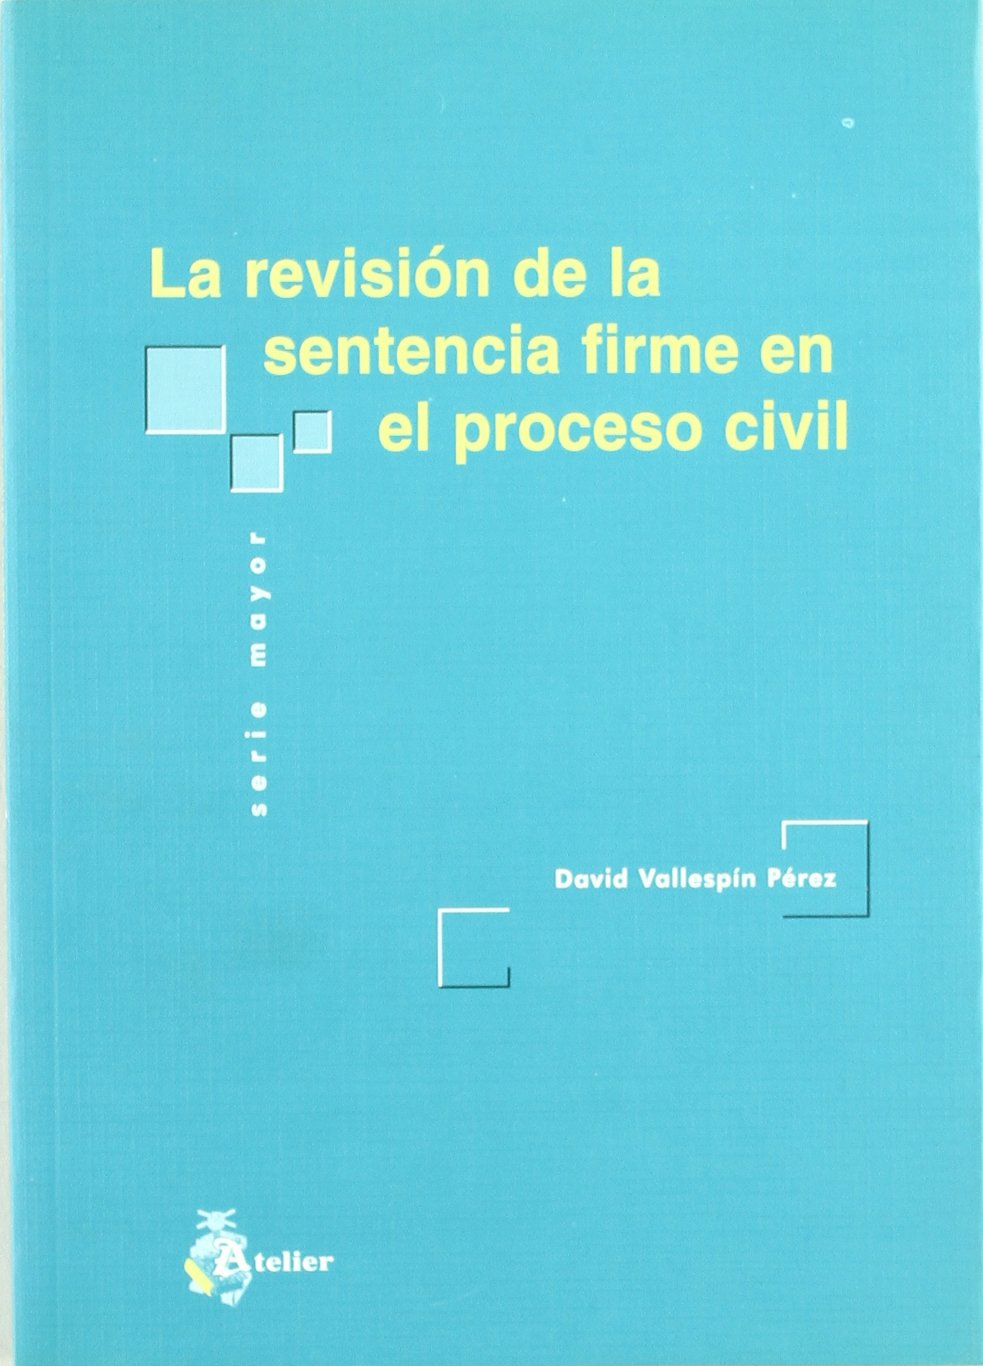 La revisión de la sentencia firme en el proceso civil